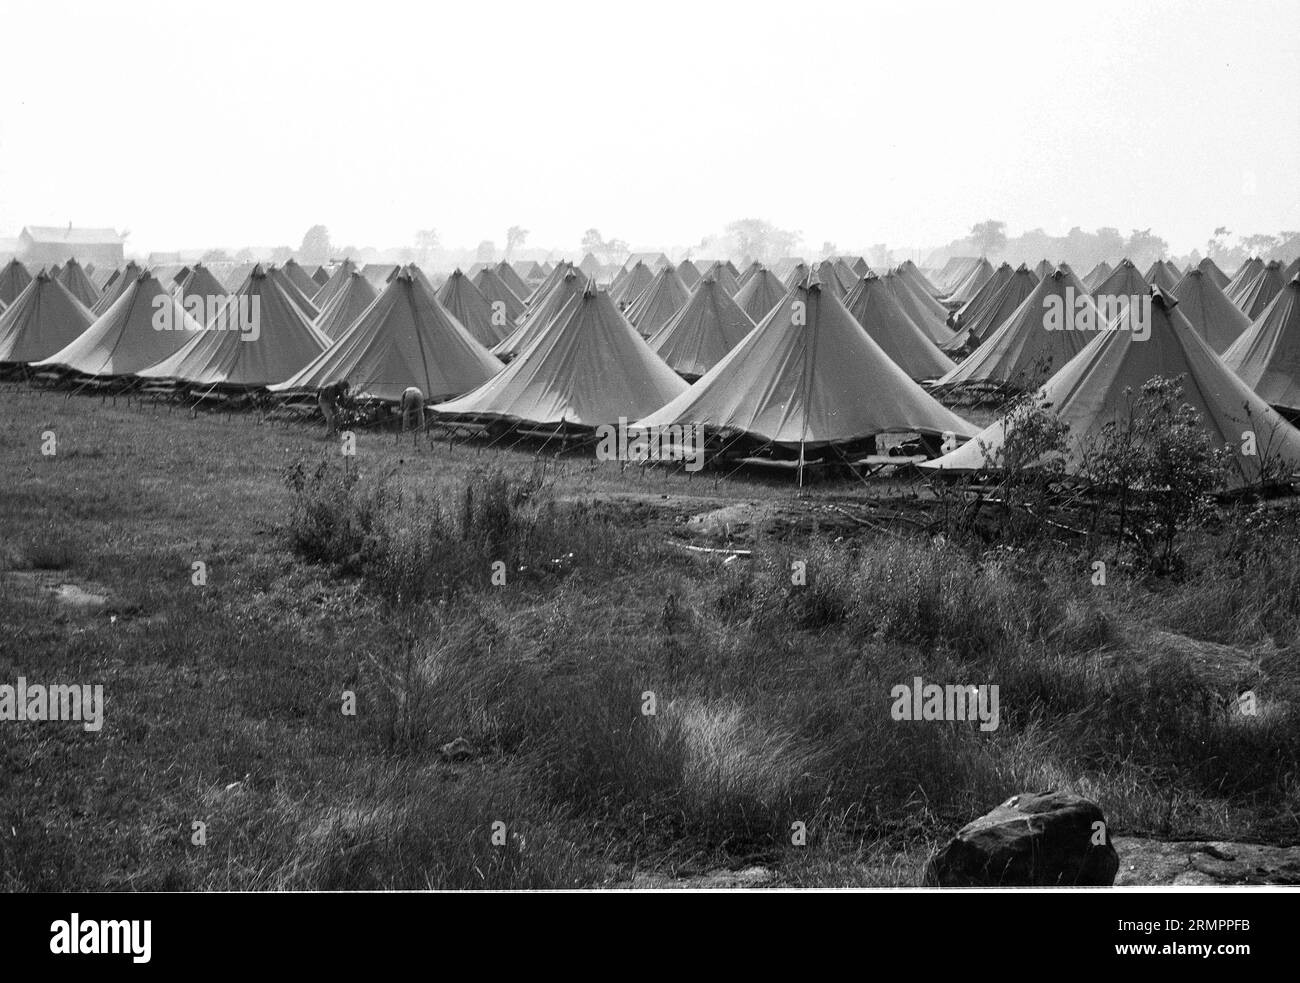 Tentes dans un camp militaire. Les membres de la 114e division d’infanterie de l’armée des États-Unis s’entraînent pour combattre l’Allemagne en Europe pendant la Seconde Guerre mondiale. Banque D'Images